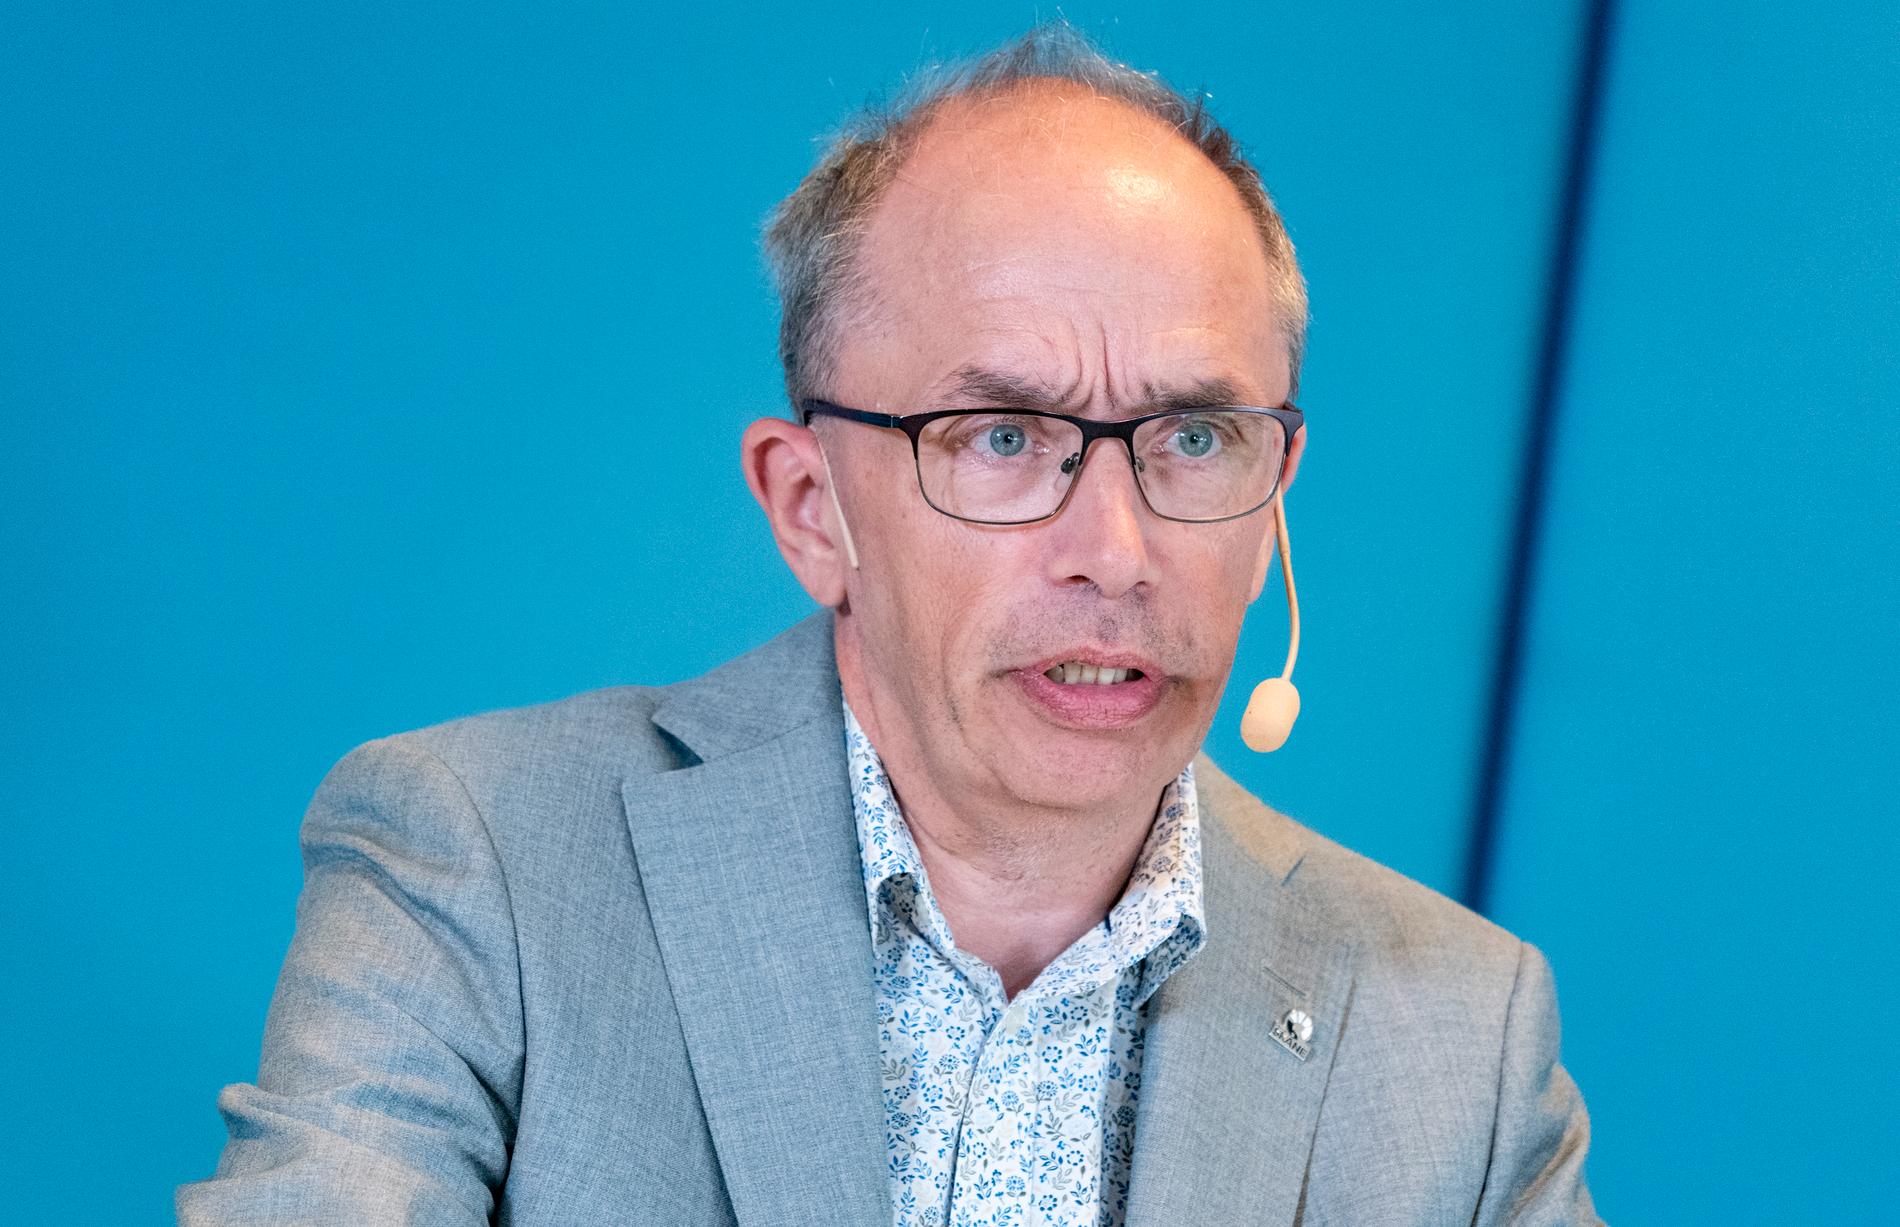 Alf Jönsson, regiondirektör, under onsdagens presskonferens i Regionhuset i Dockan i Malmö med Region Skåne gällande det aktuella coronapandemiläget.